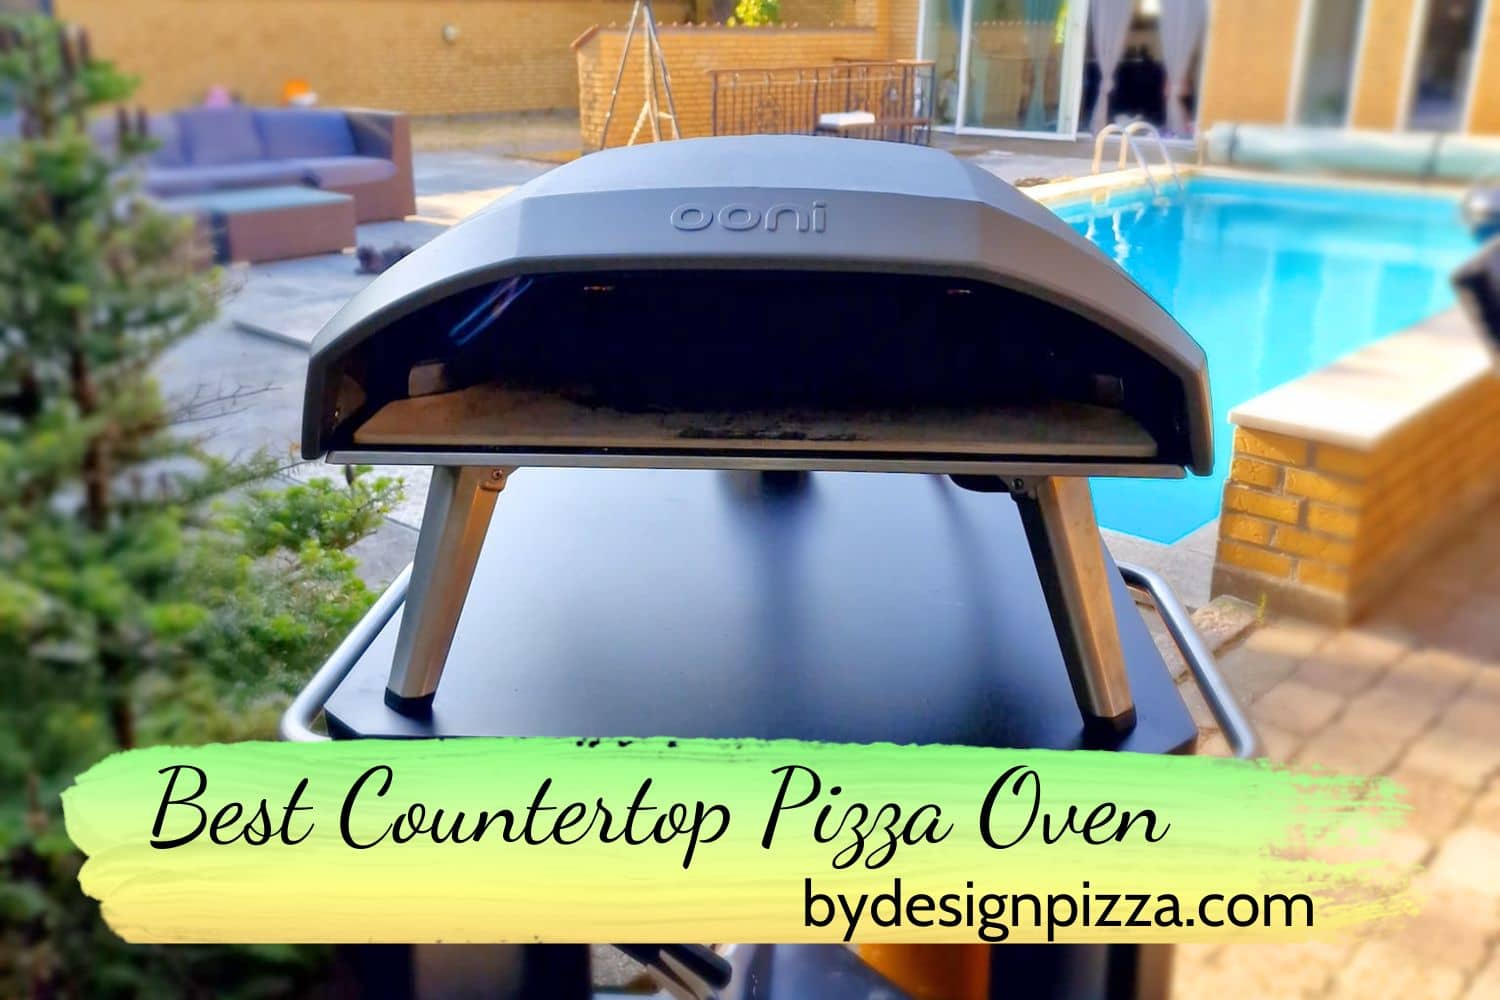 Best Countertop Pizza Oven